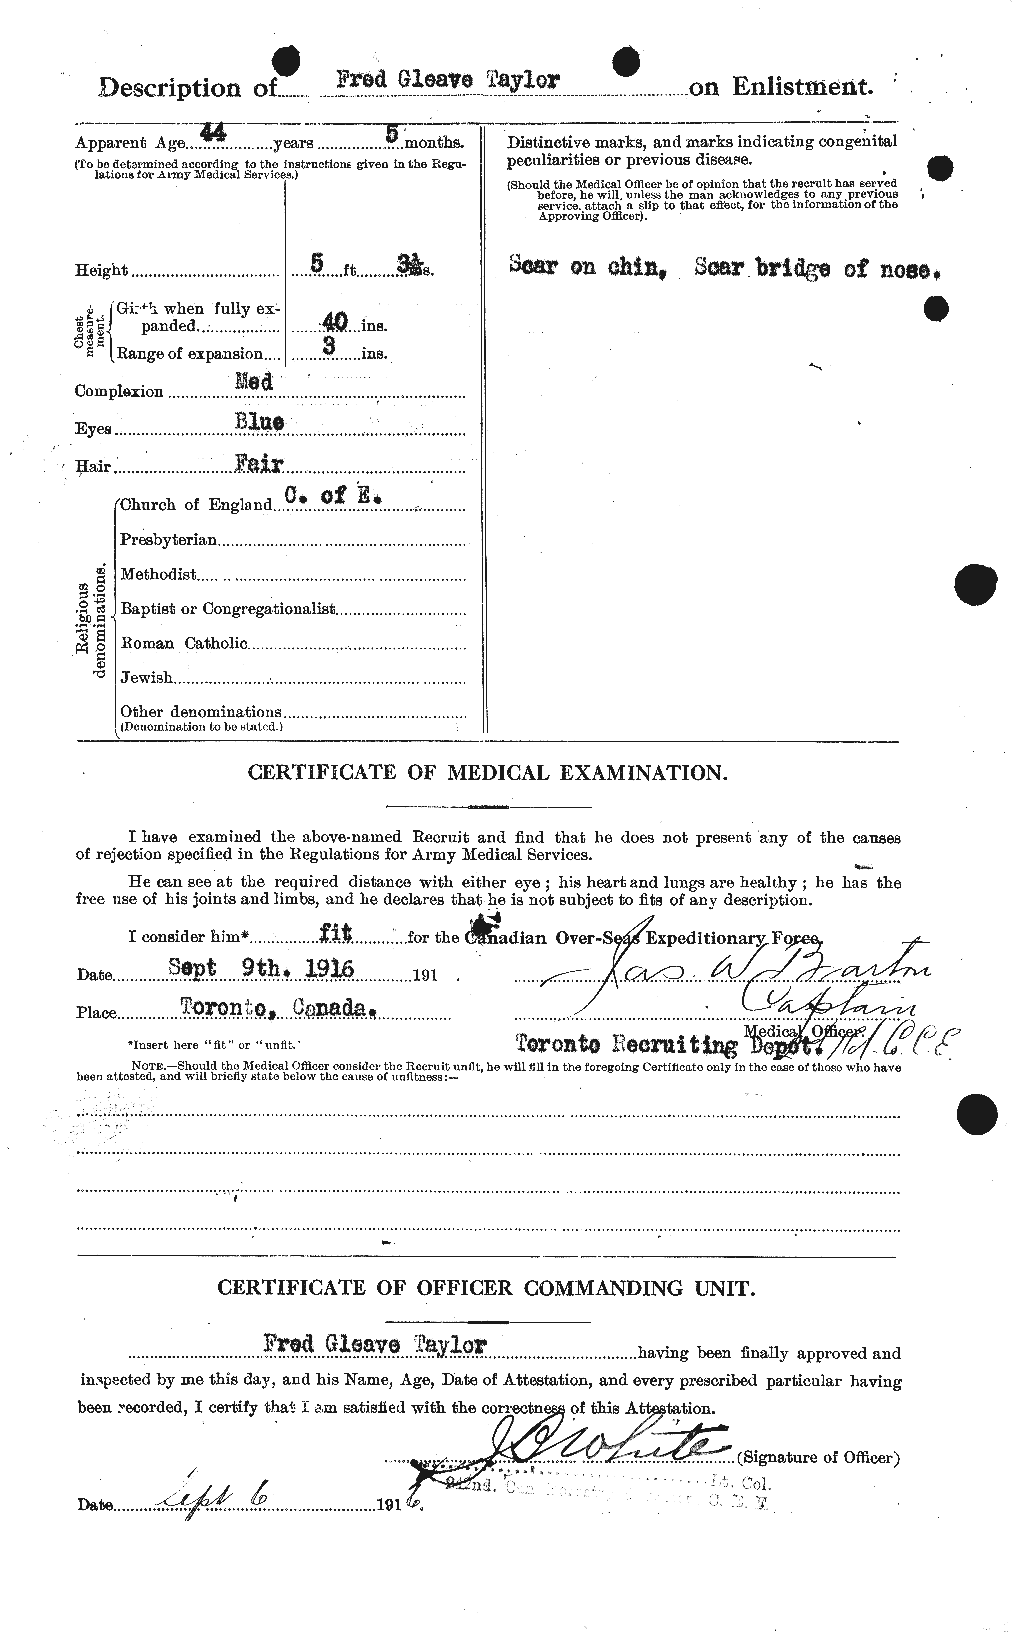 Dossiers du Personnel de la Première Guerre mondiale - CEC 625752b